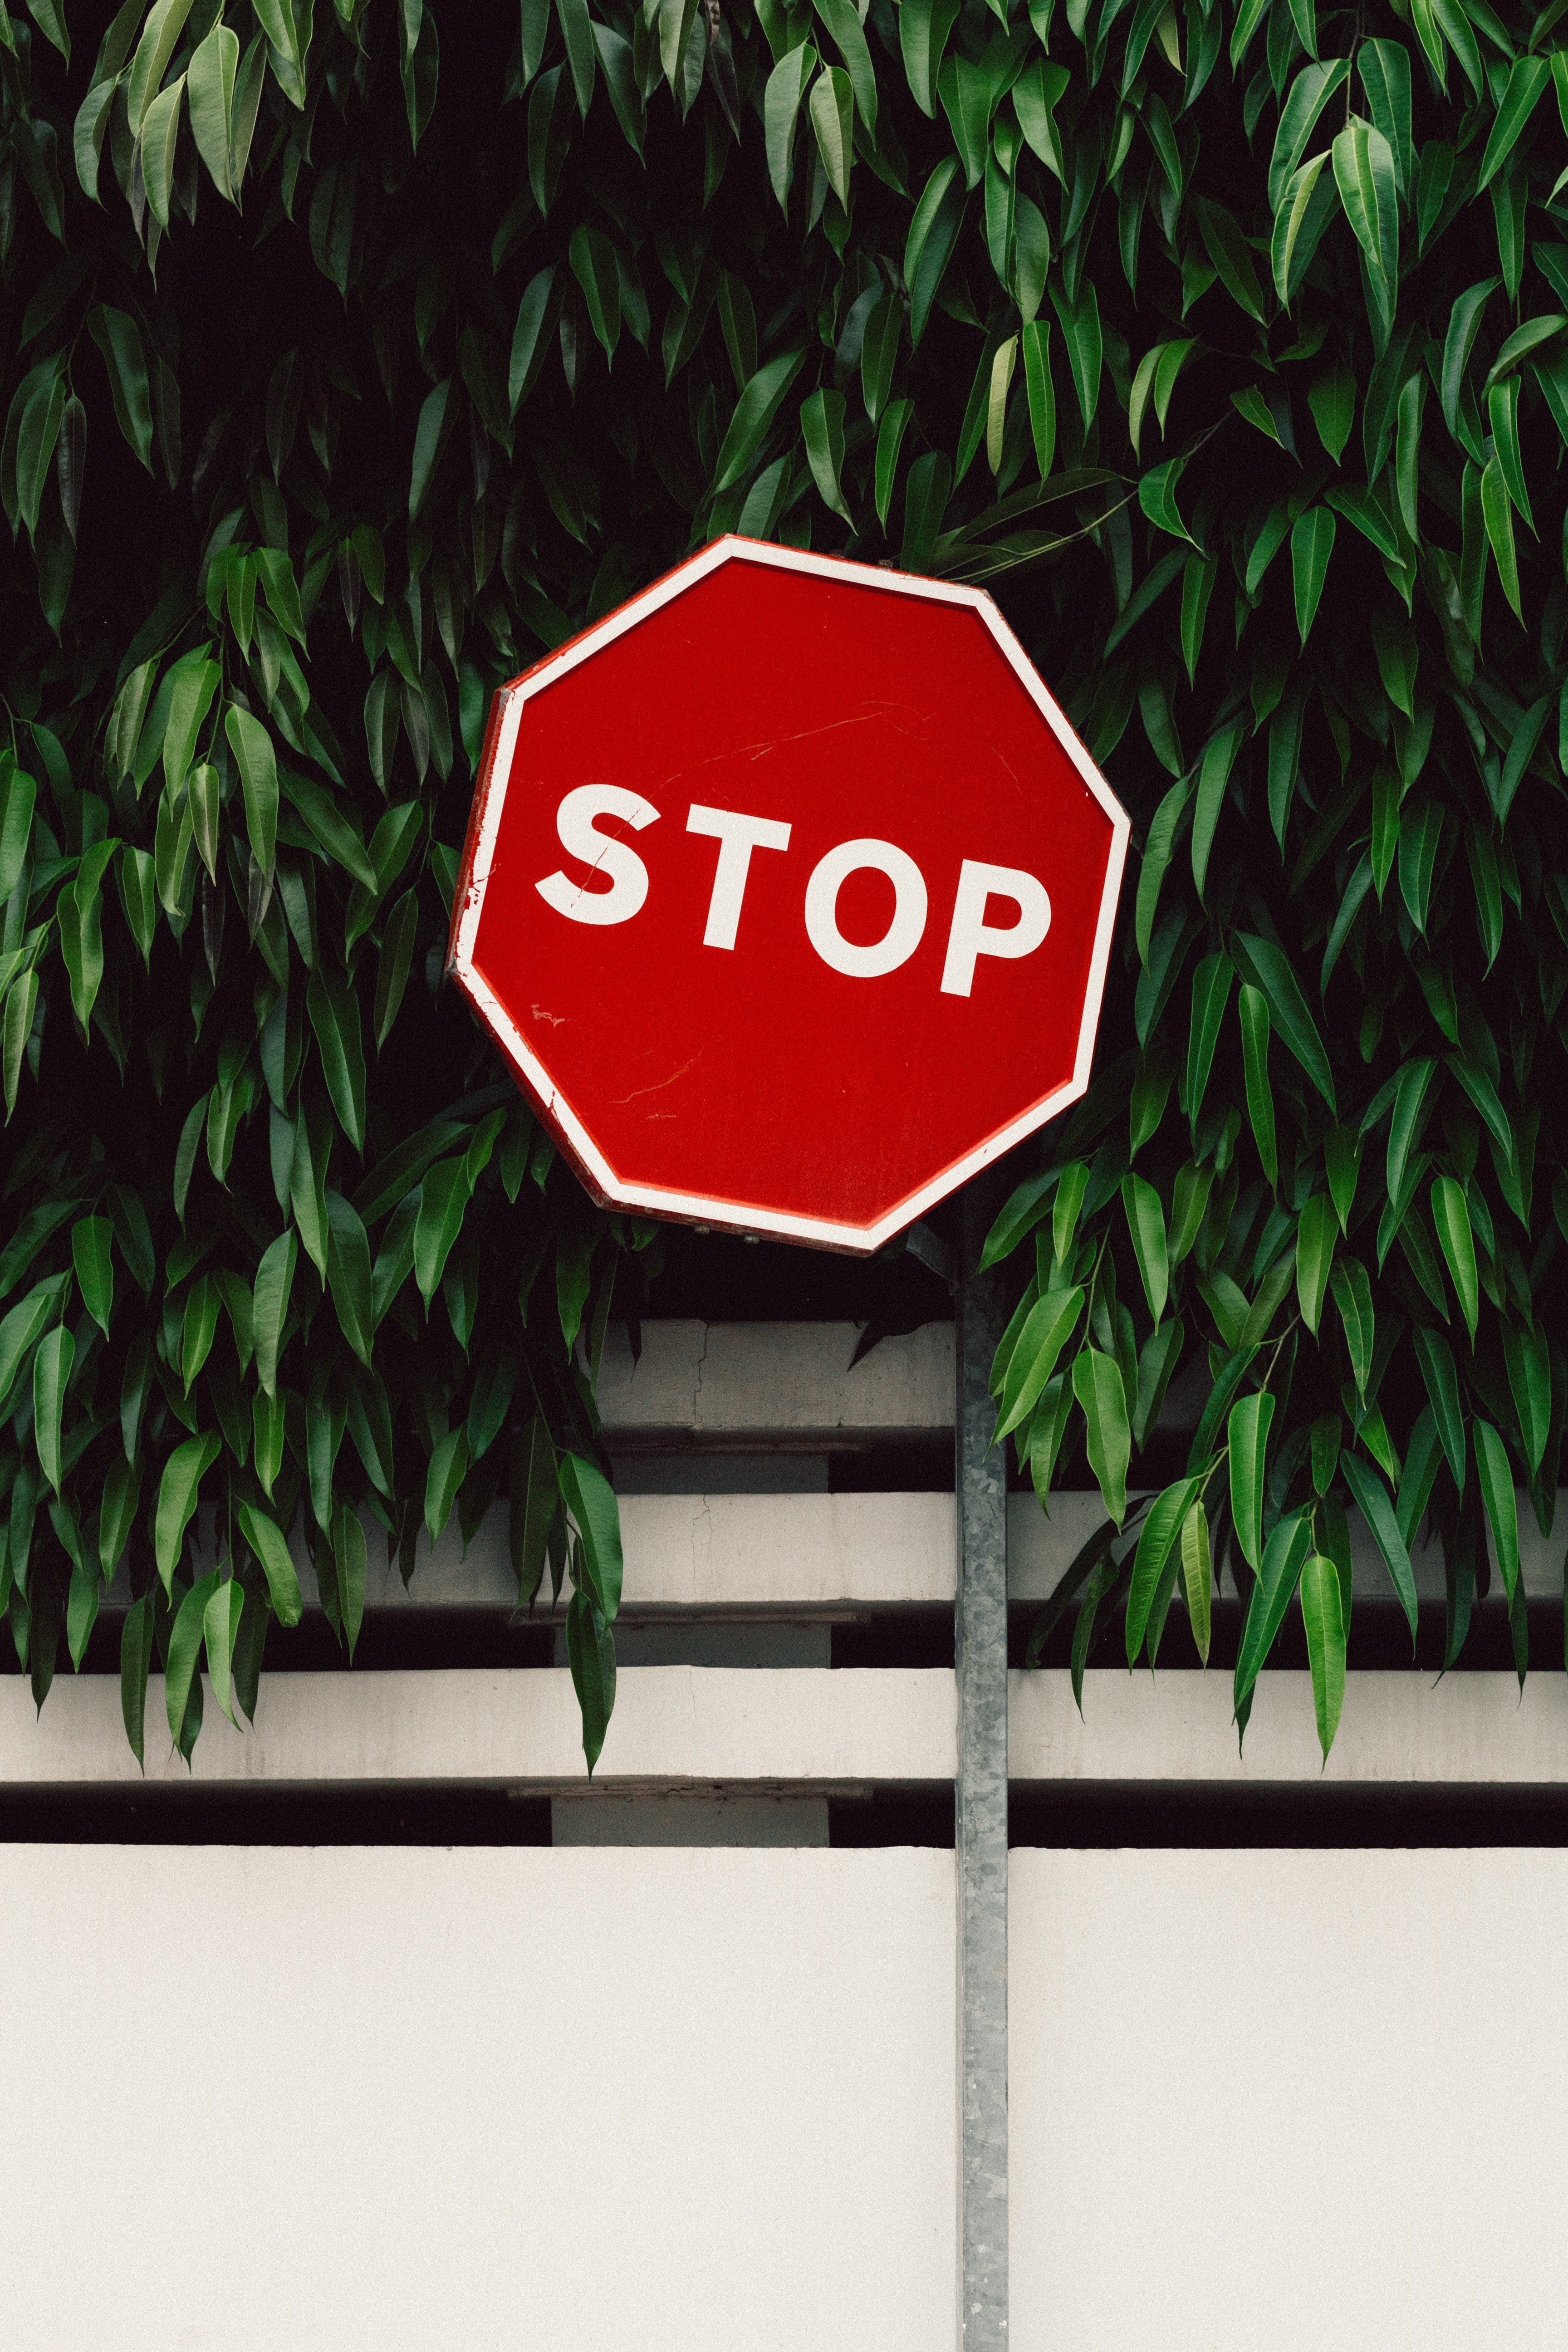 Panneau de circulation rouge stop, devant des feuilles d'arbres et un muret.